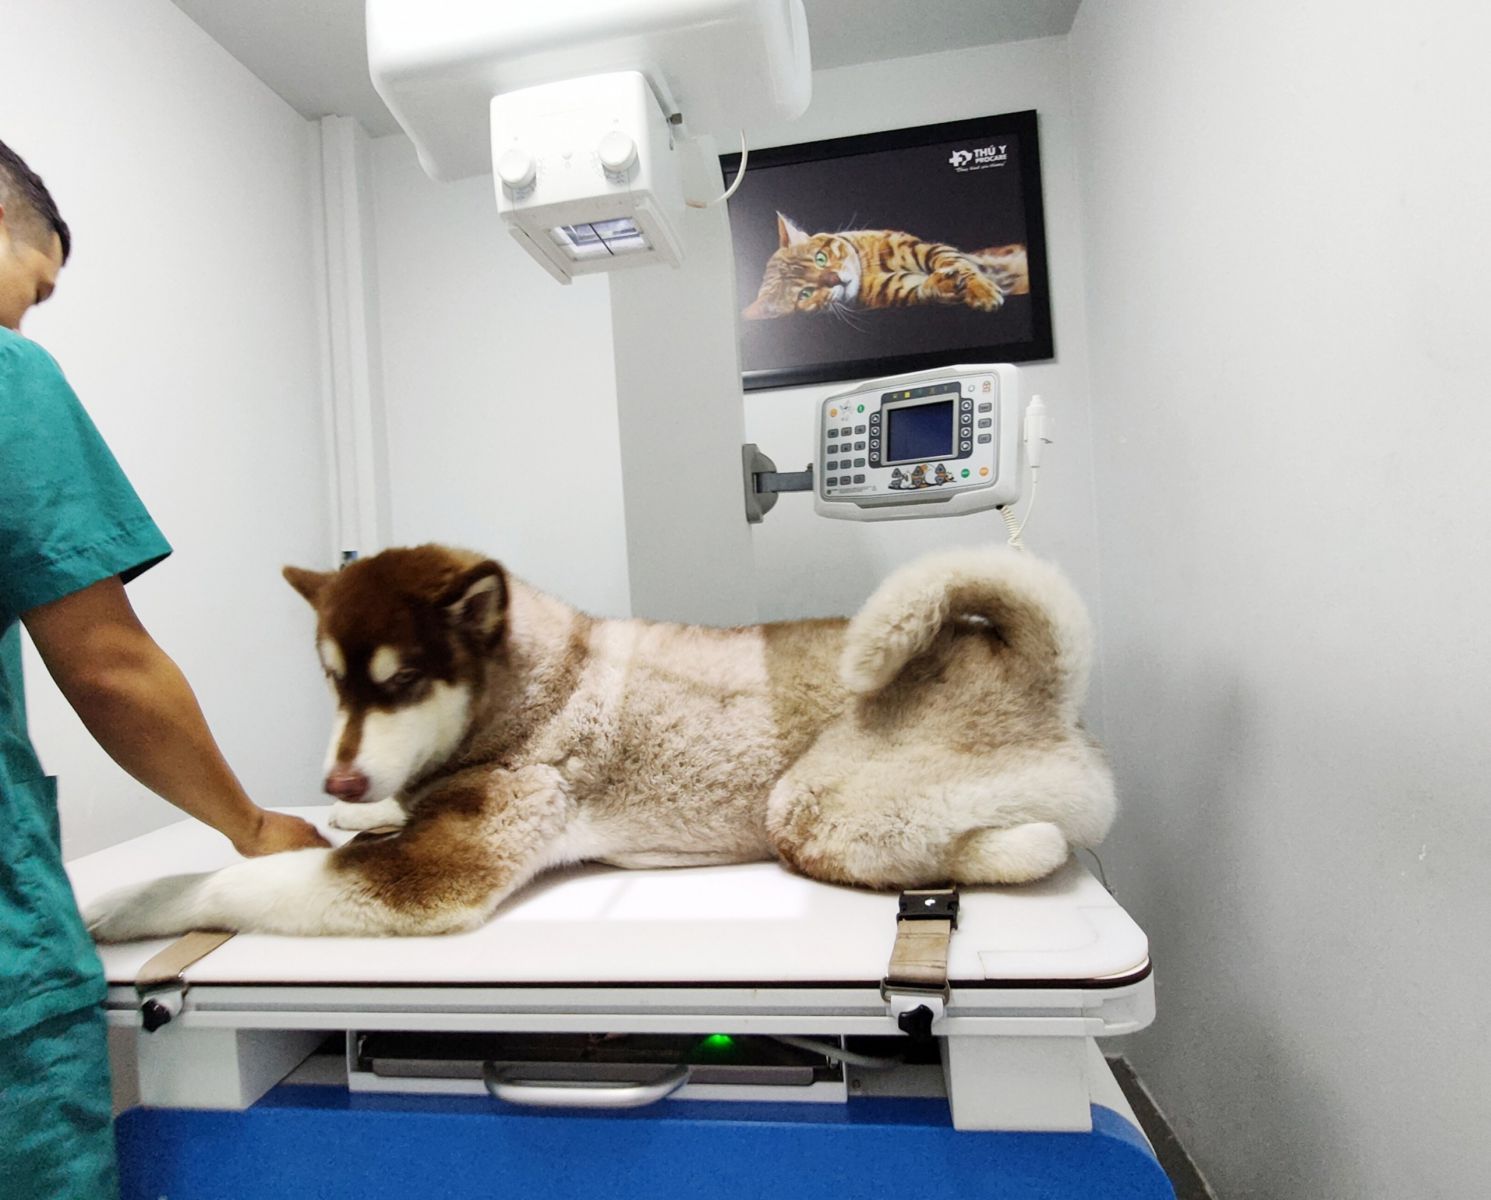 chụp x - quang cho chó